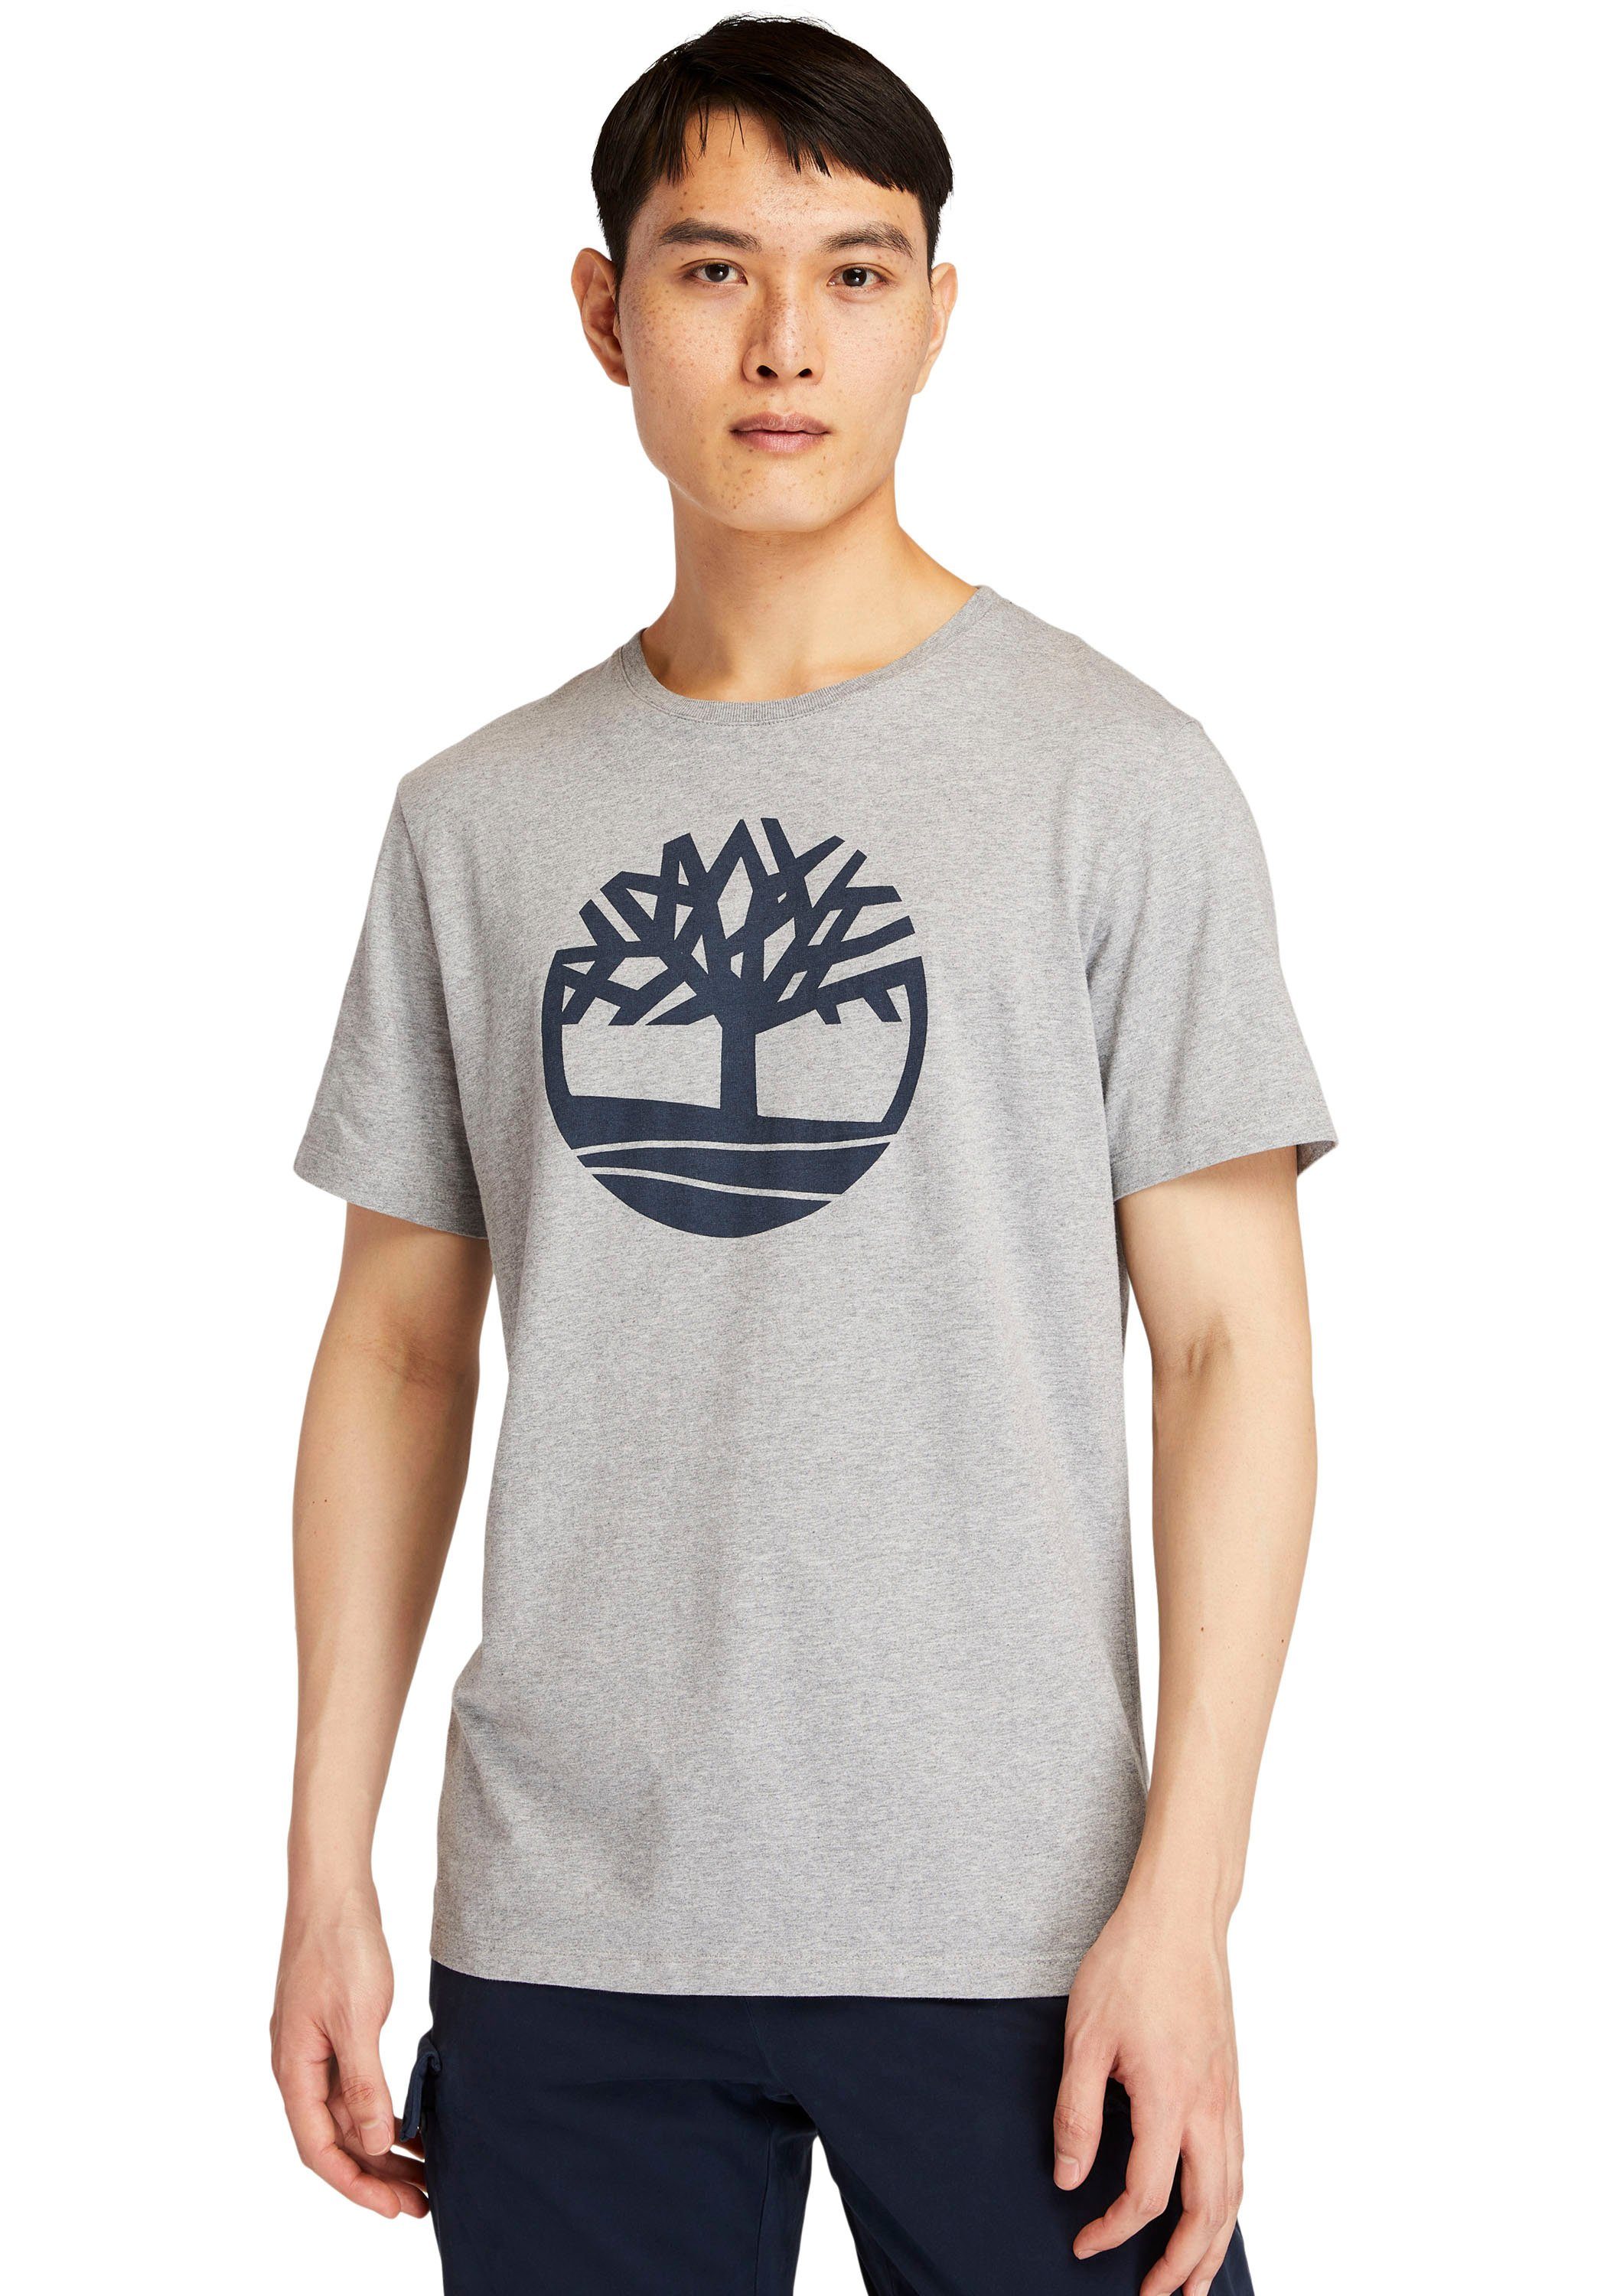 Timberland T-Shirt Kennebec River Tree grau meliert | Sport-T-Shirts